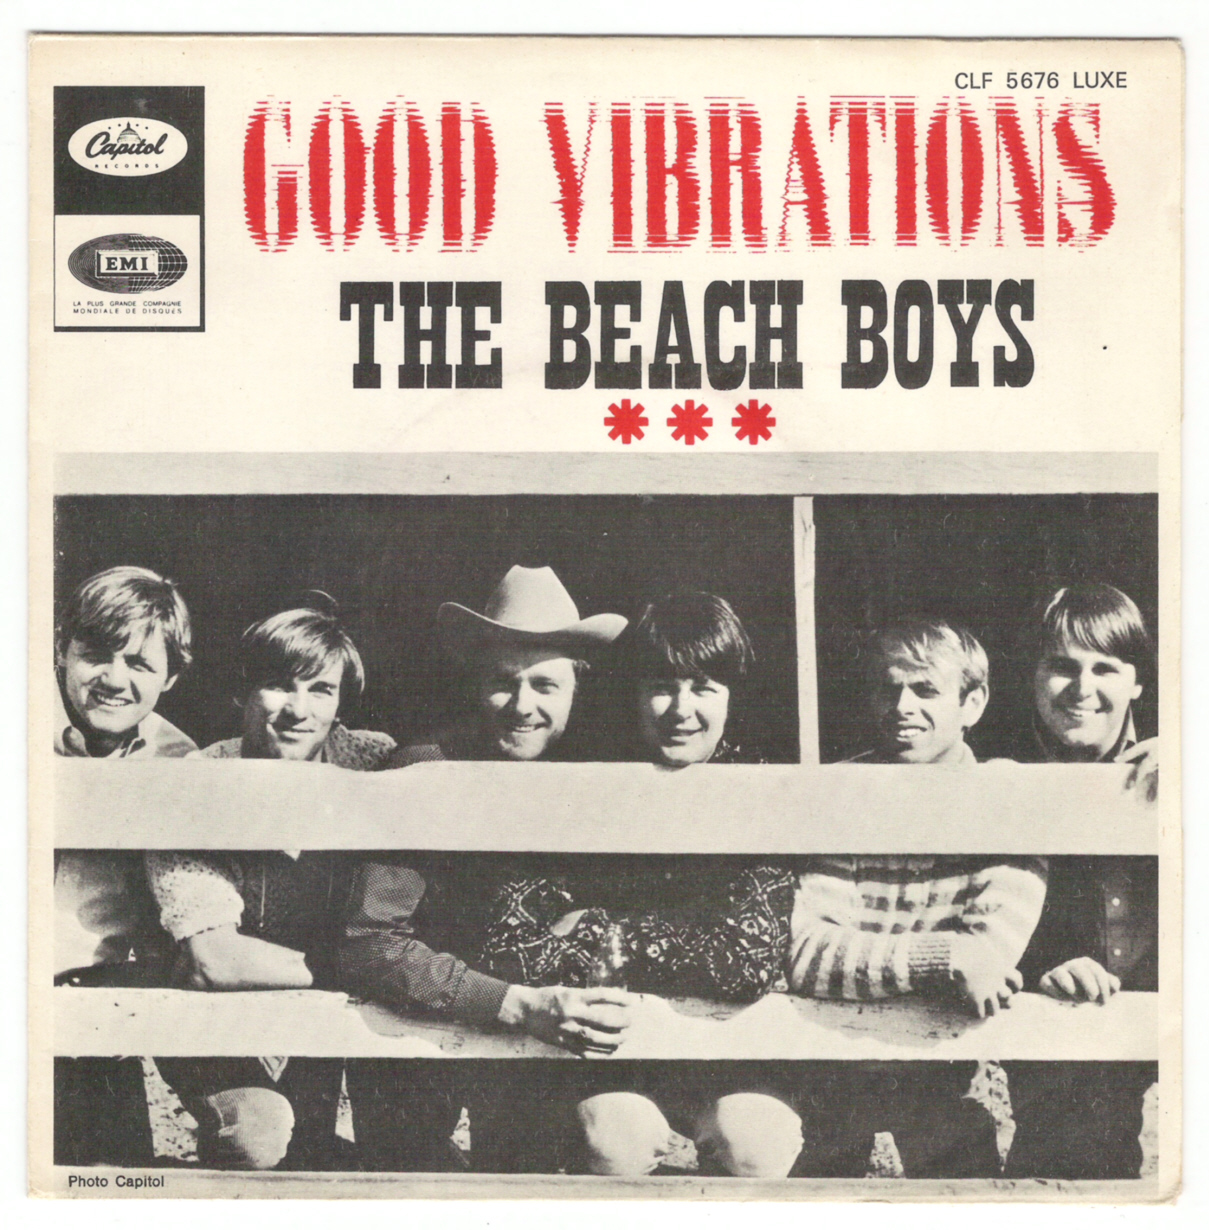 Beach Boys on 45 - France - Capitol 1966-1970